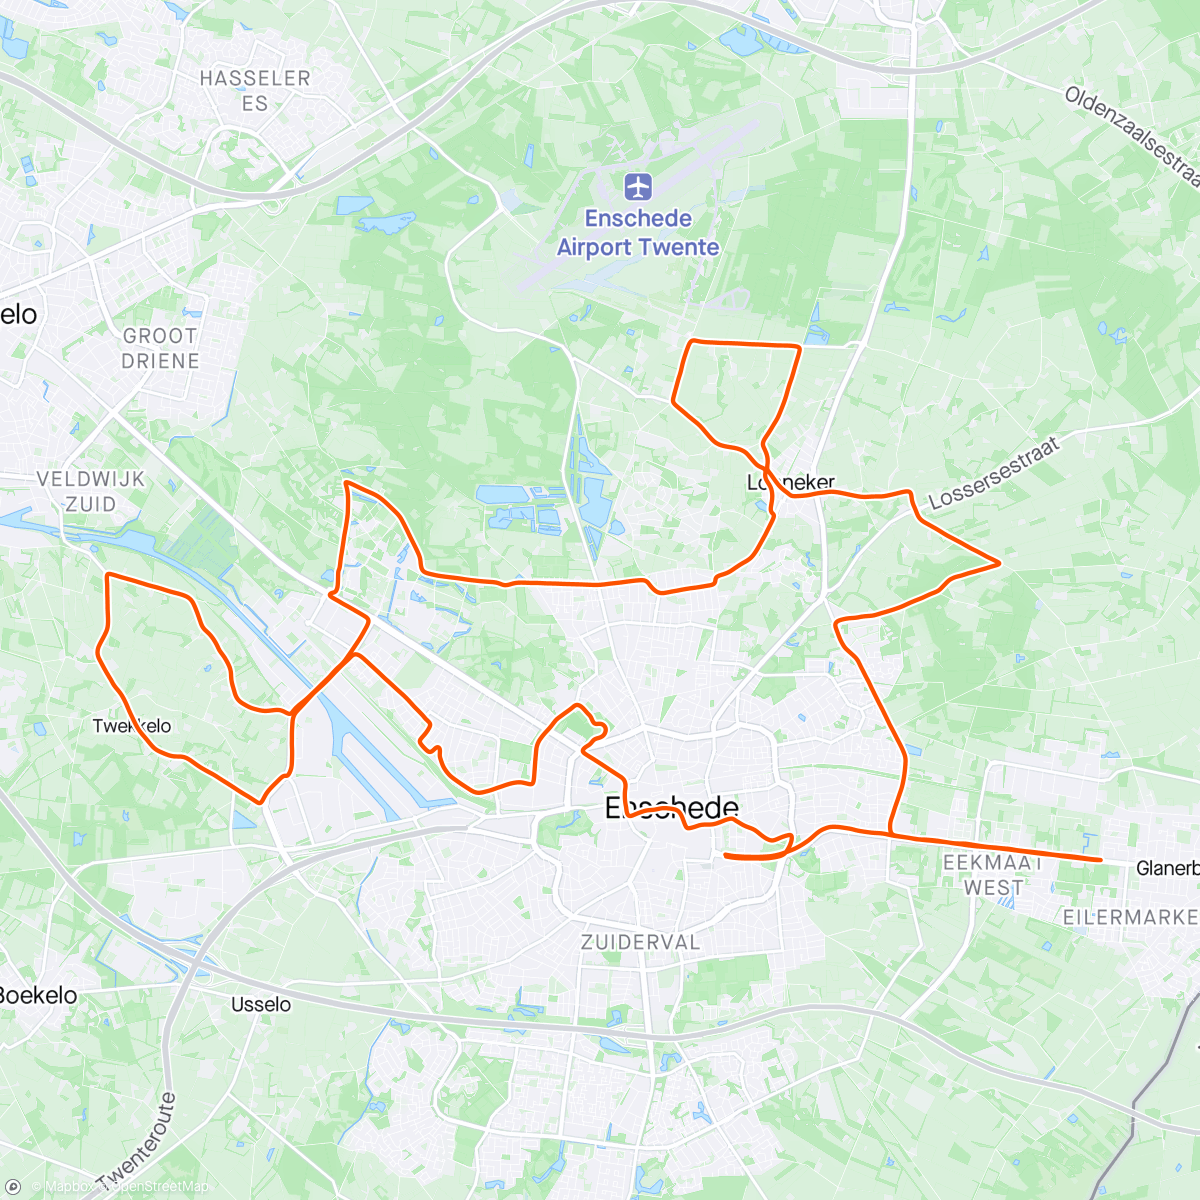 「Marathon Enschede」活動的地圖